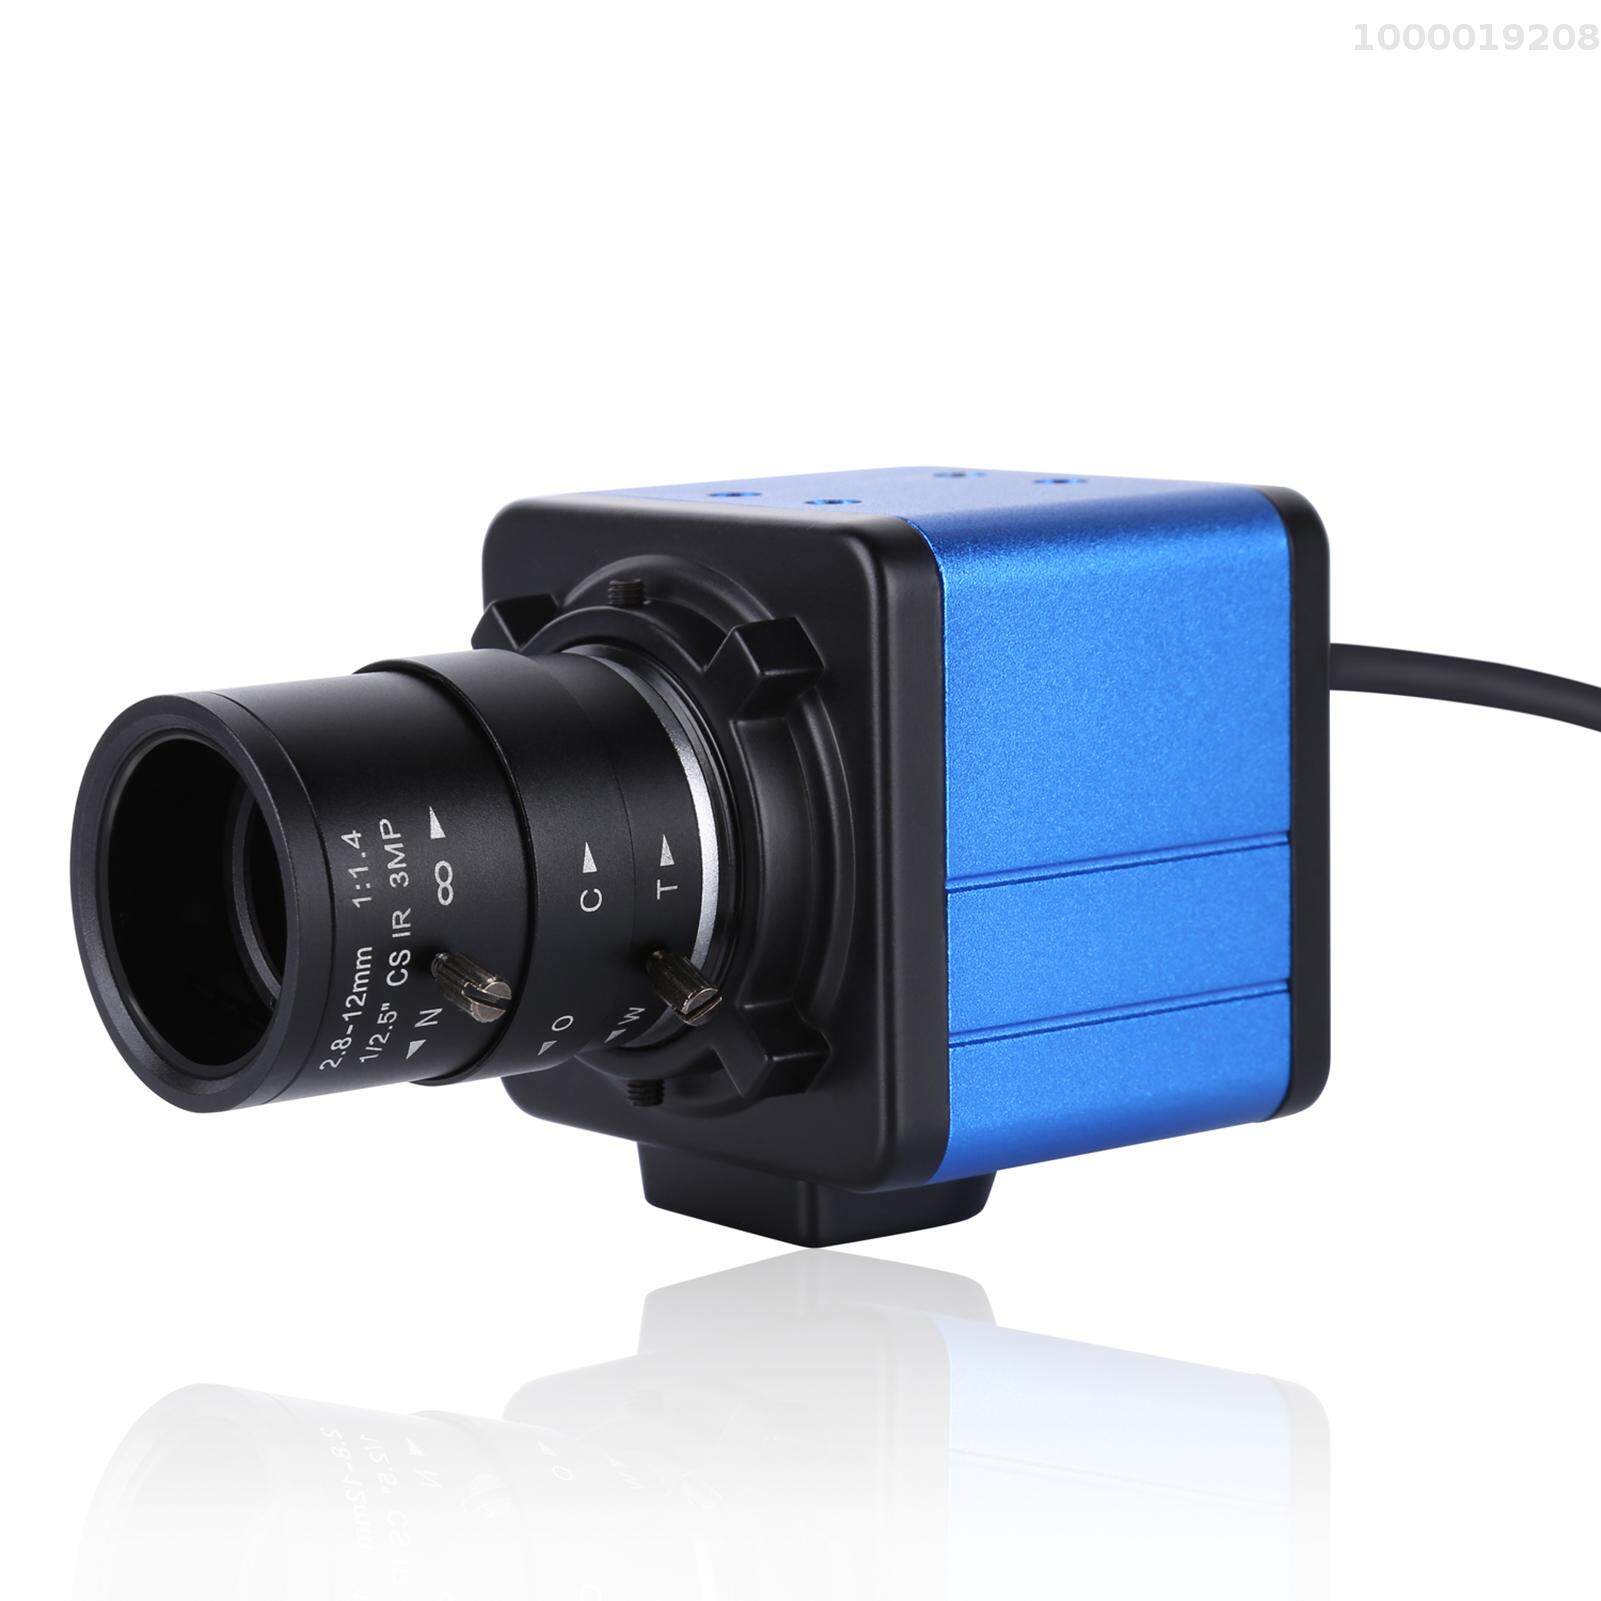 Low Price Aibecy 1080P HD Camera Computer Camera Webcam 2 Megapixels 5X